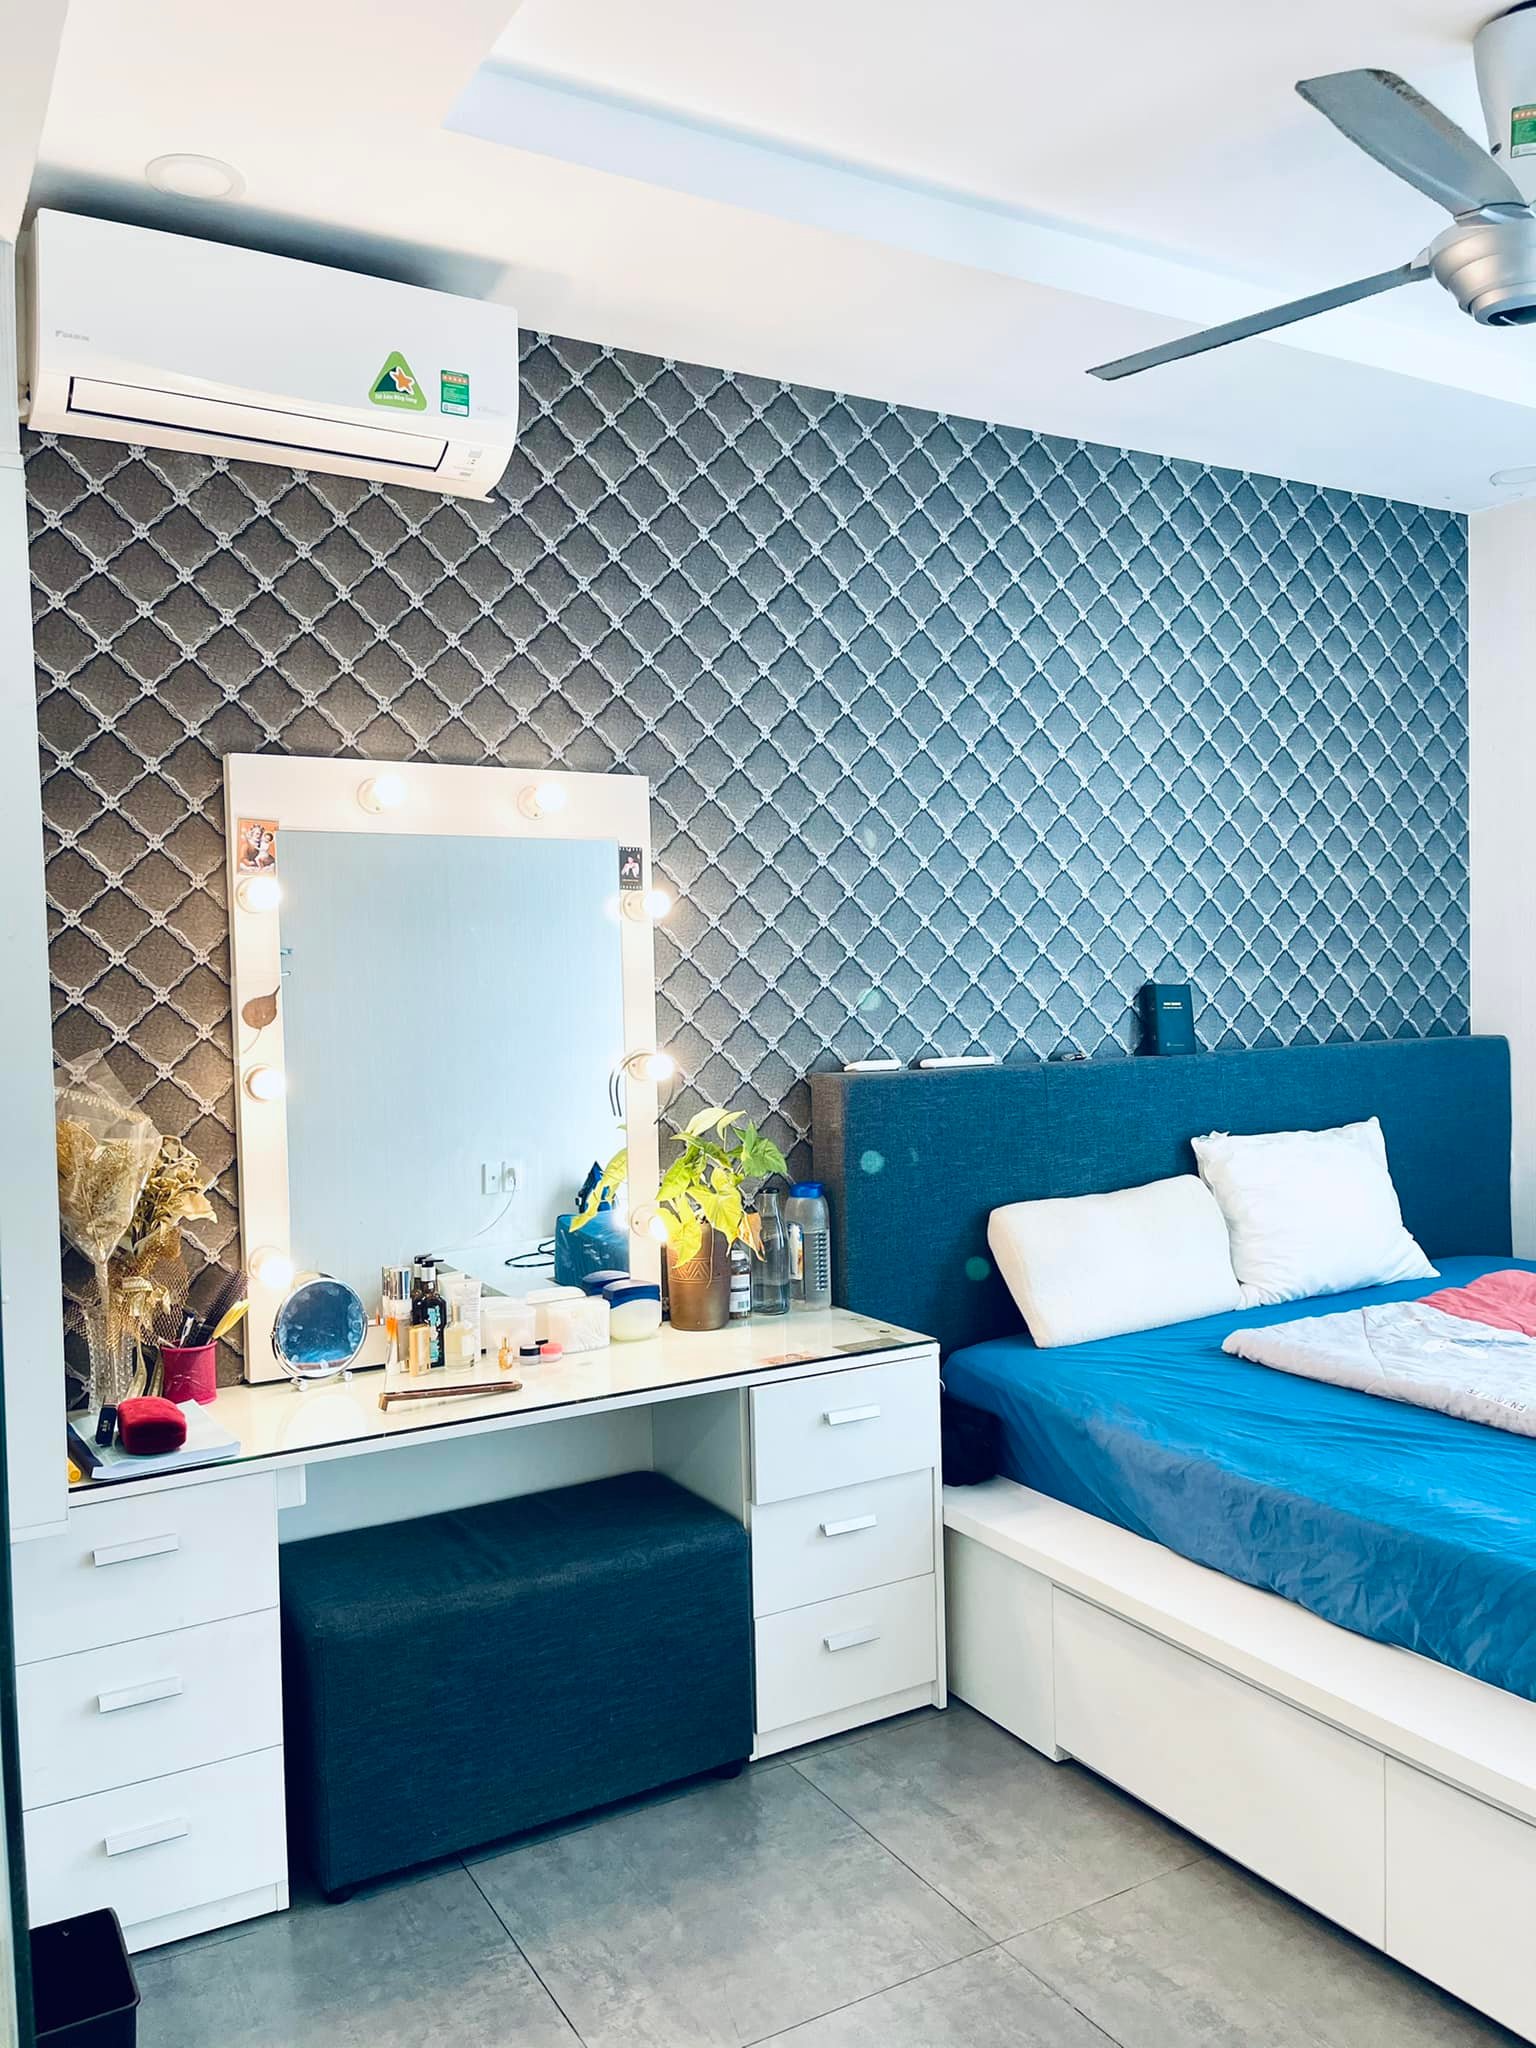 Phòng ngủ chính trong căn hộ dễ chịu với màu xanh - trắng.